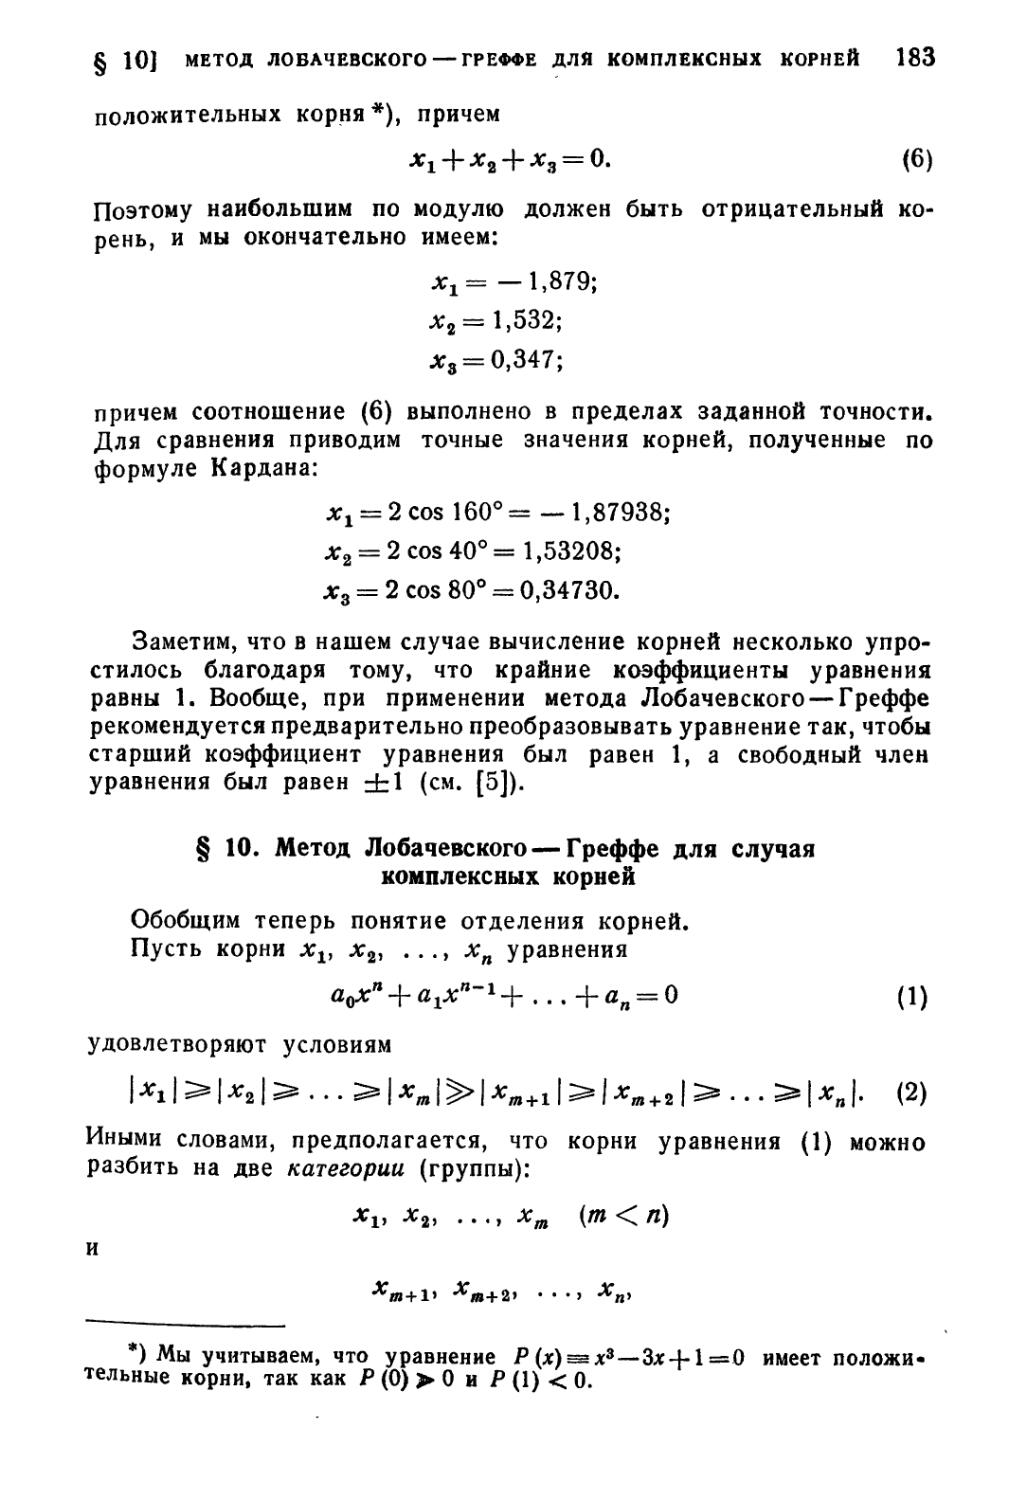 § 10. Метод Лобачевского-Греффе для случая комплексных корней